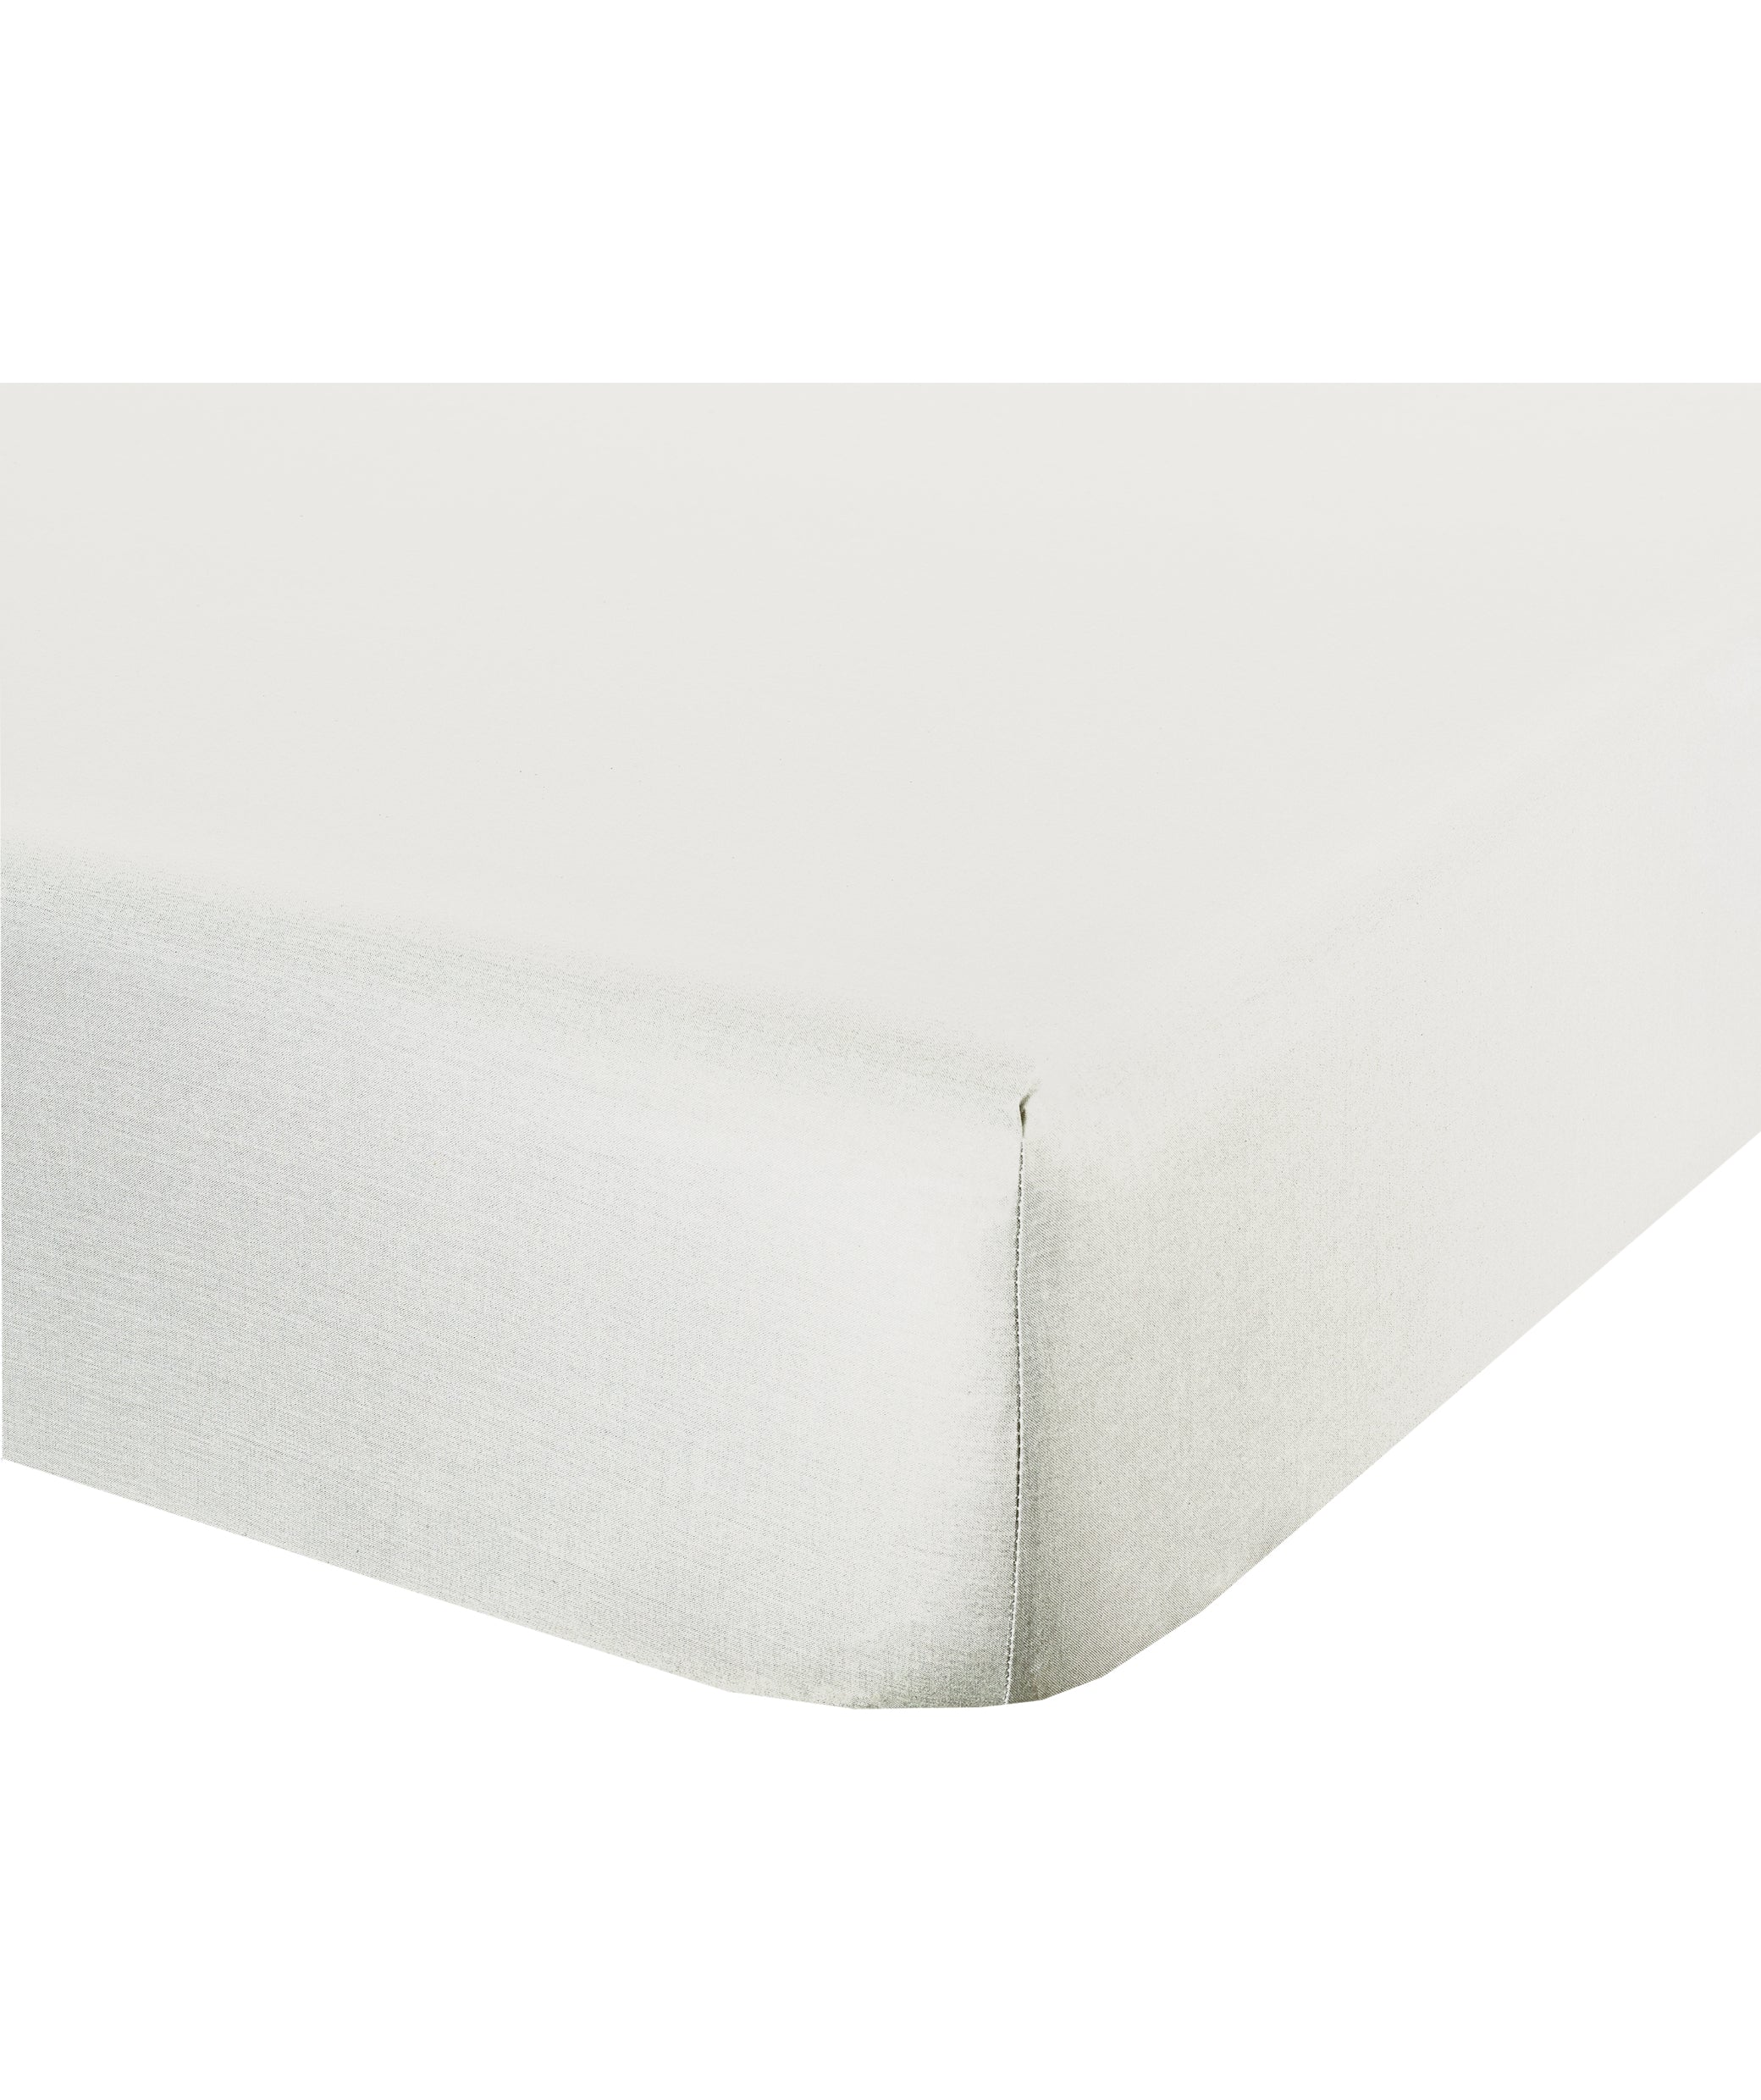 Completo letto lenzuola federe bifaccia double face stampa digitale in cotone made in italy  FOGLIE VERDI